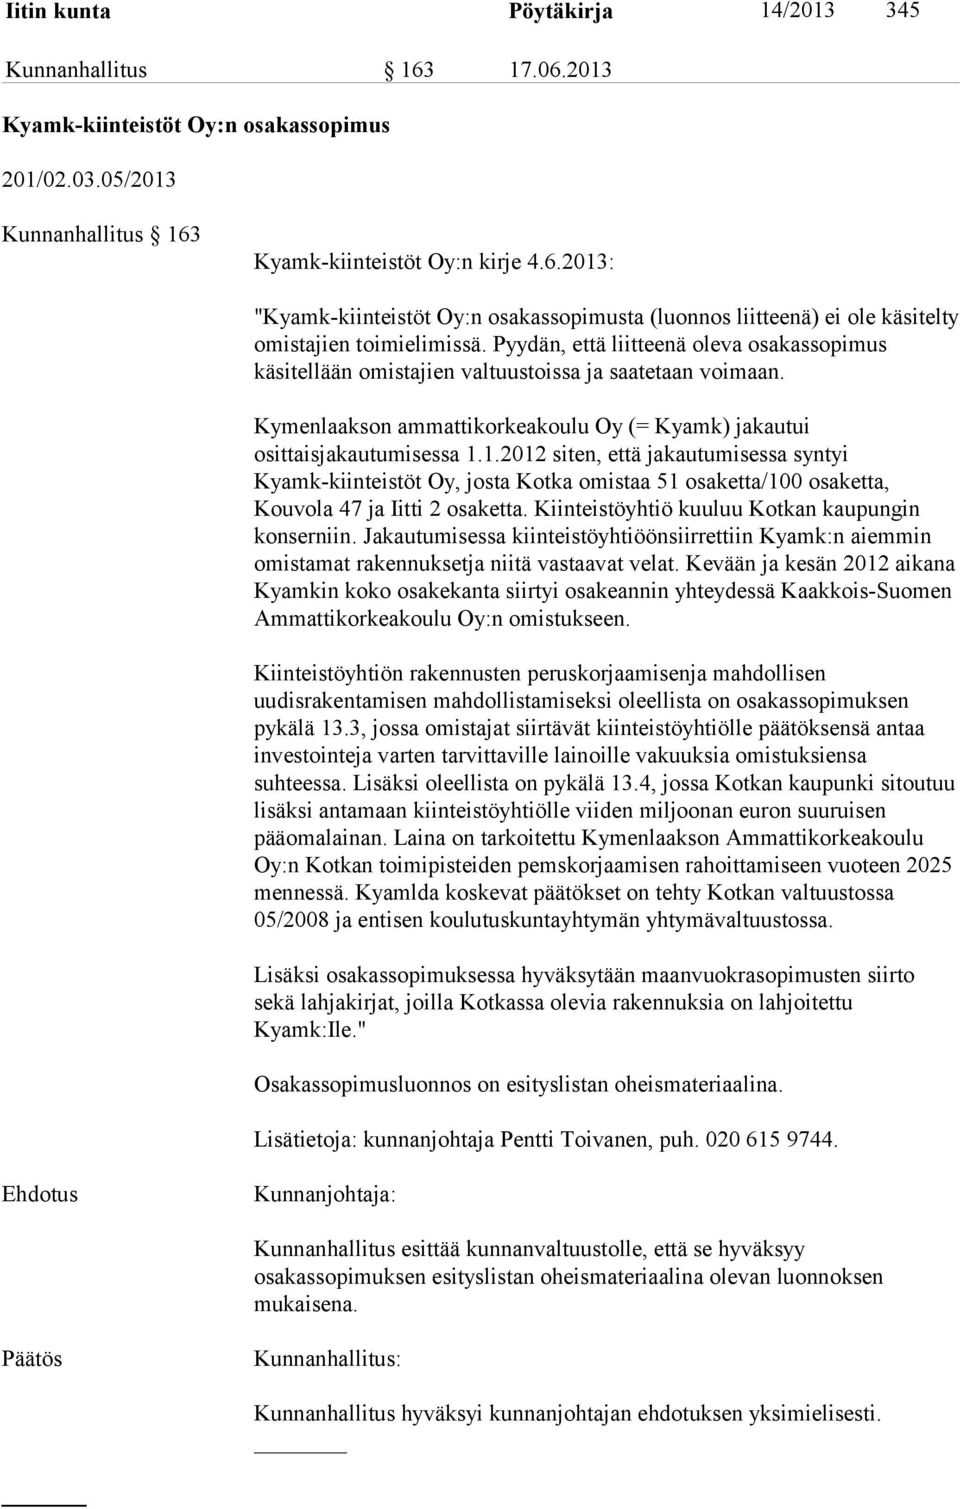 1.2012 siten, että jakautumisessa syntyi Kyamk-kiinteistöt Oy, josta Kotka omistaa 51 osaketta/100 osaketta, Kouvola 47 ja Iitti 2 osaketta. Kiinteistöyhtiö kuuluu Kotkan kaupungin konserniin.